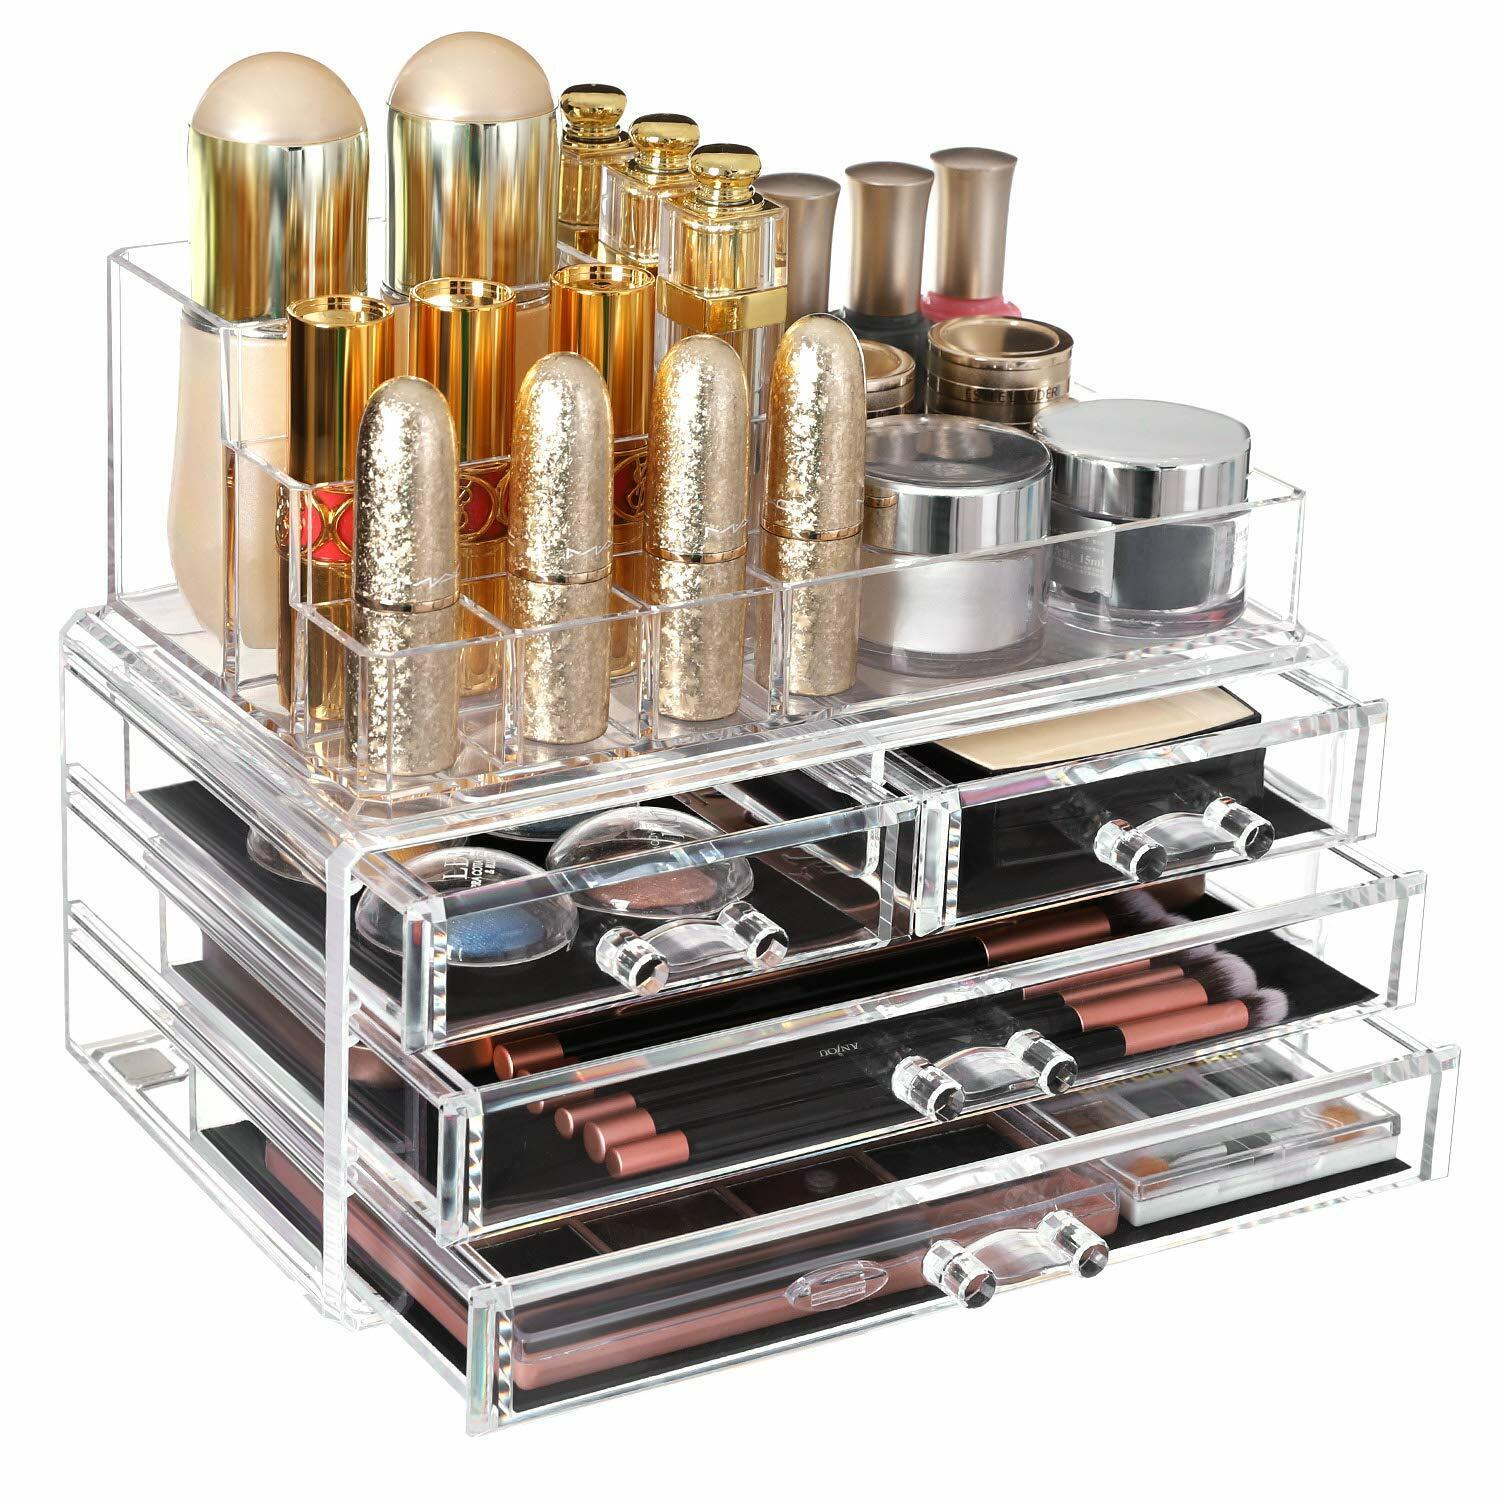 Organizador de maquillaje cosmeticos 11 compartimentos y 4 cajones, de acrilico